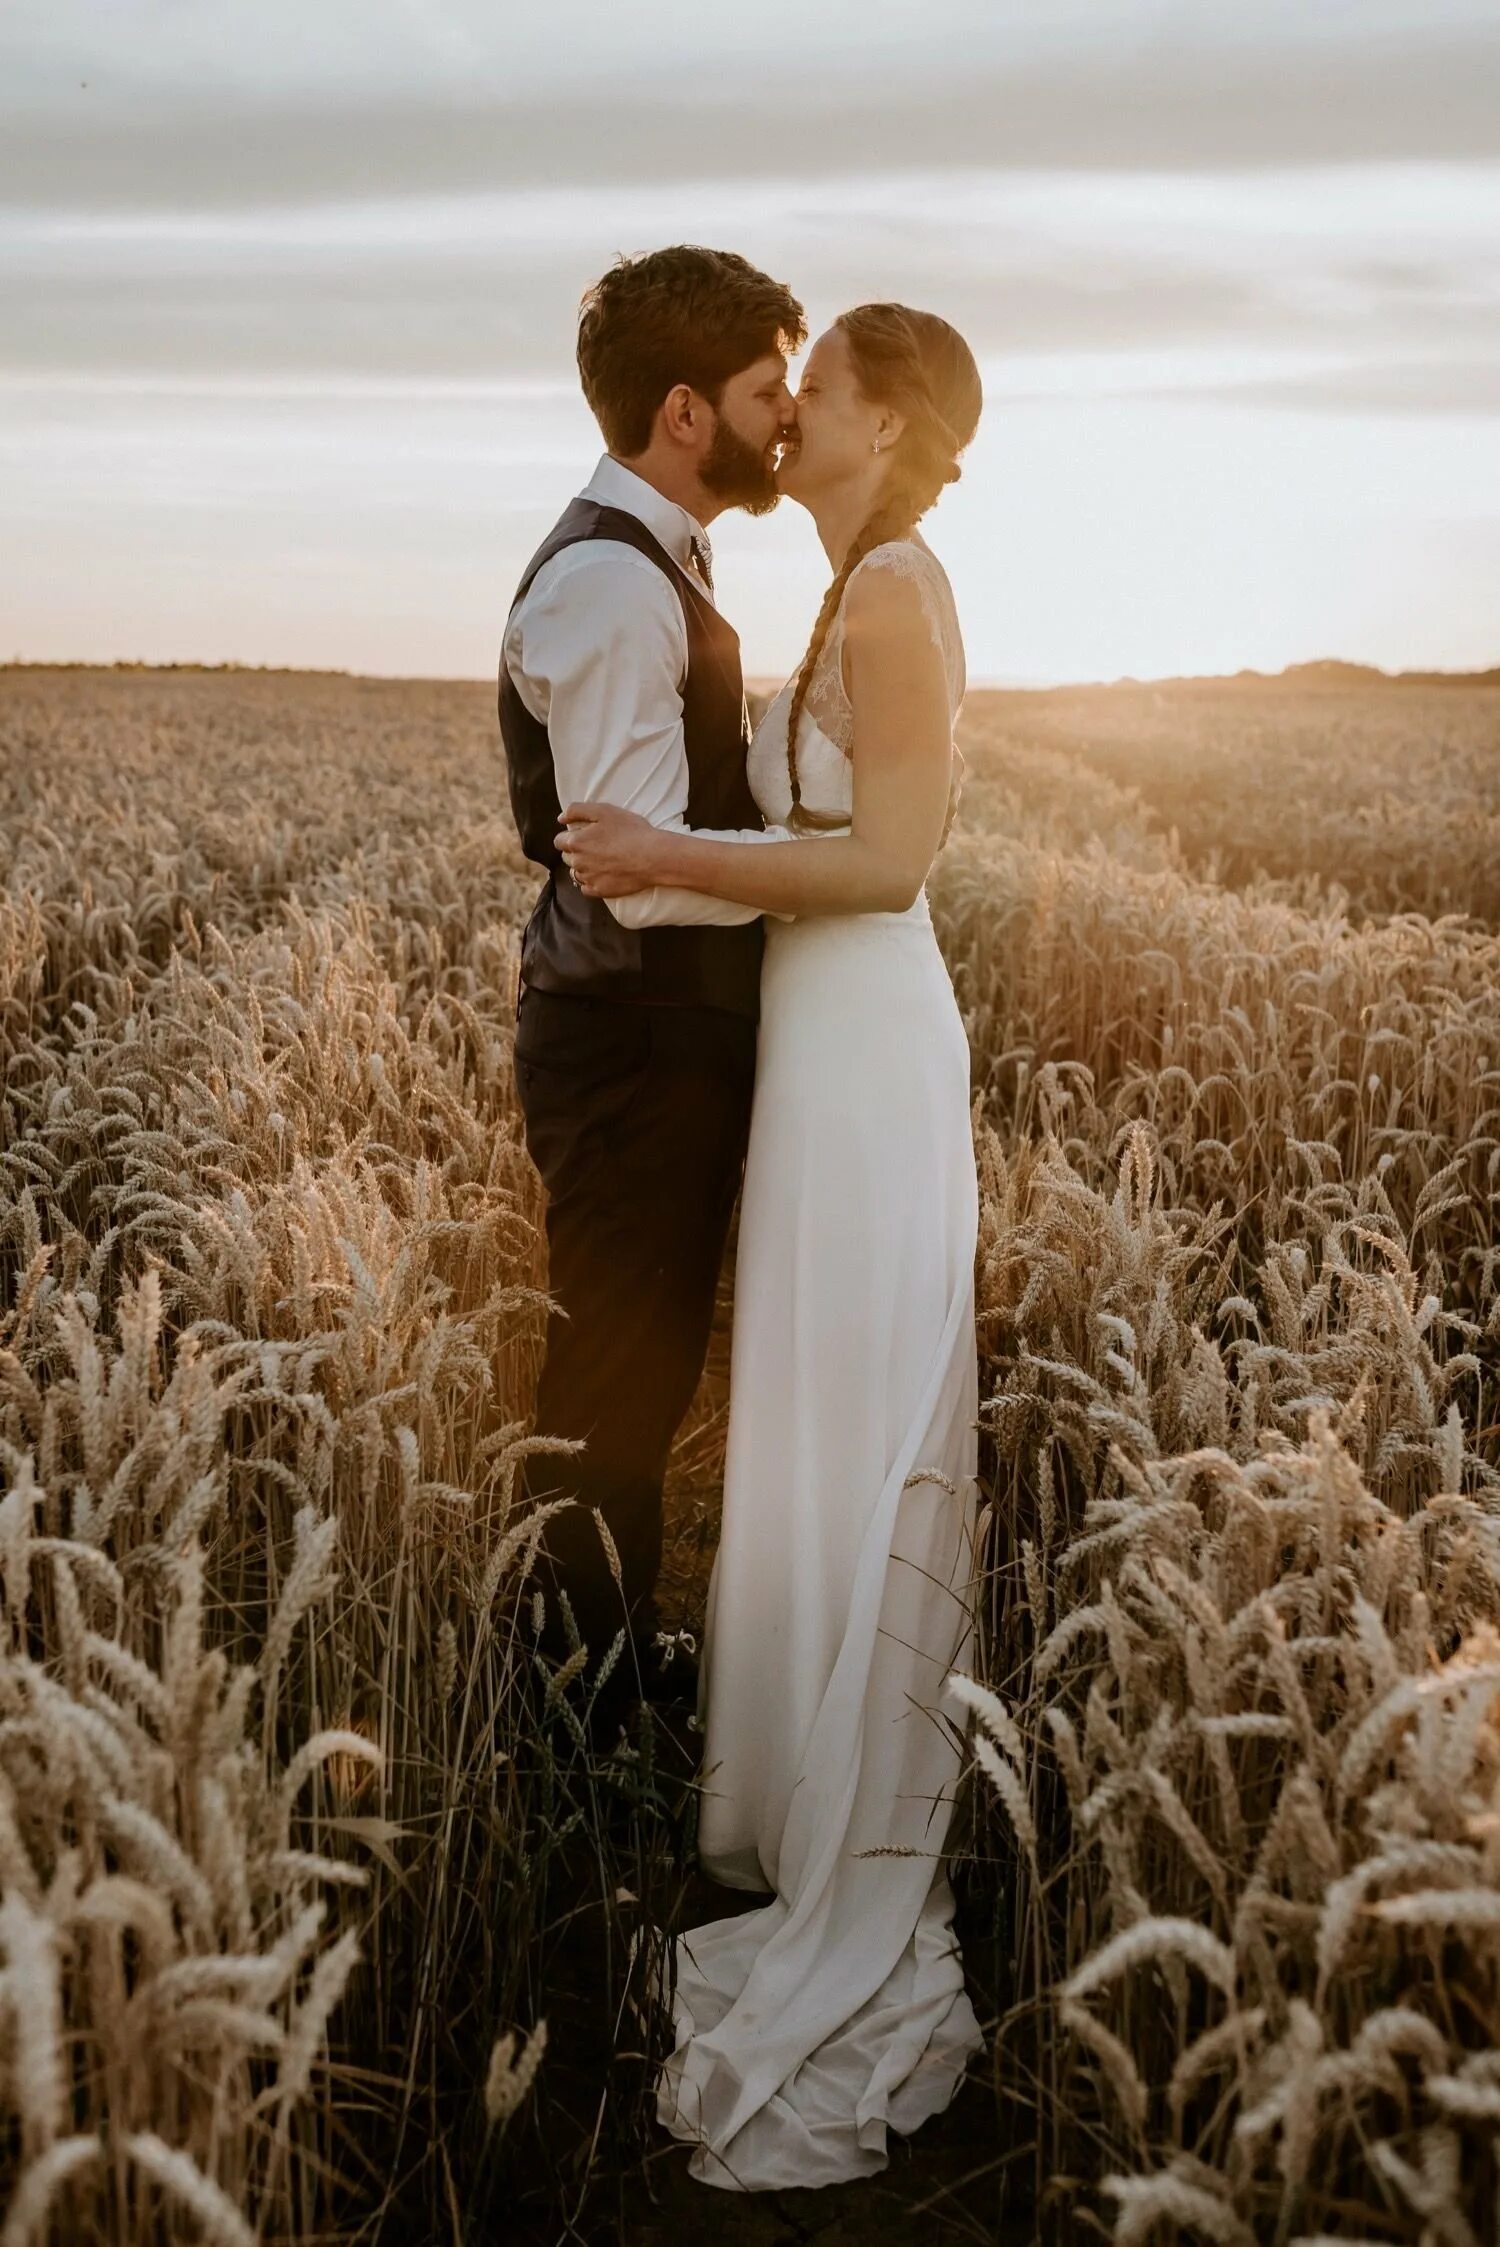 Свадьба в поле. Свадебная фотосессия в поле. Фотосессия пары в пшеничном поле. Свадебная фотосессия в пшеничном поле. Брачное поле